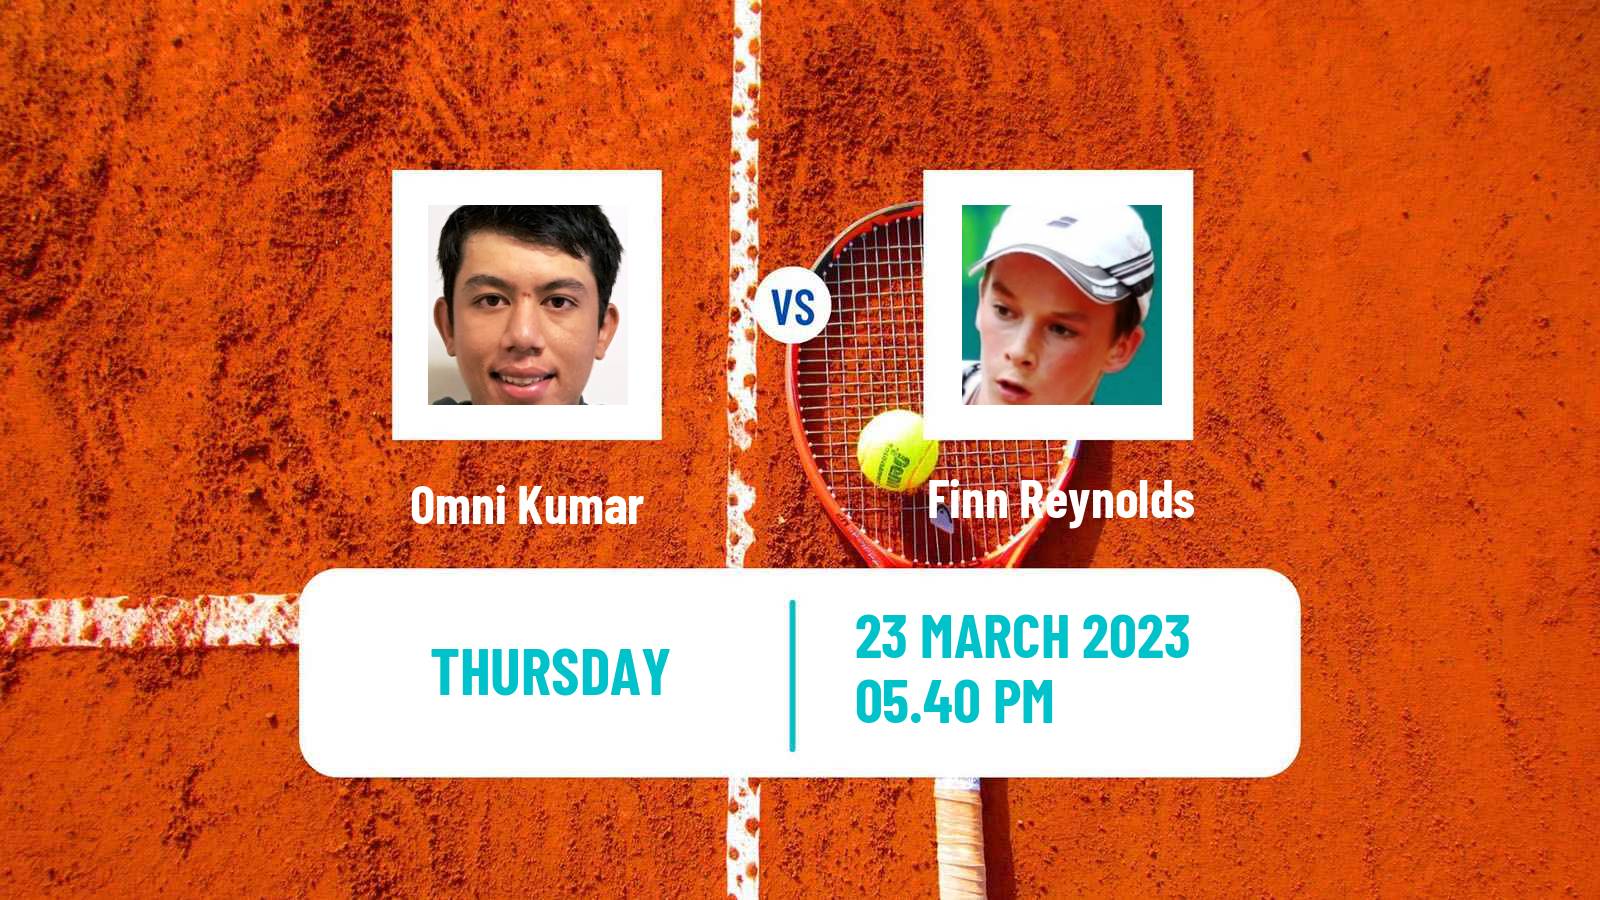 Tennis ITF Tournaments Omni Kumar - Finn Reynolds